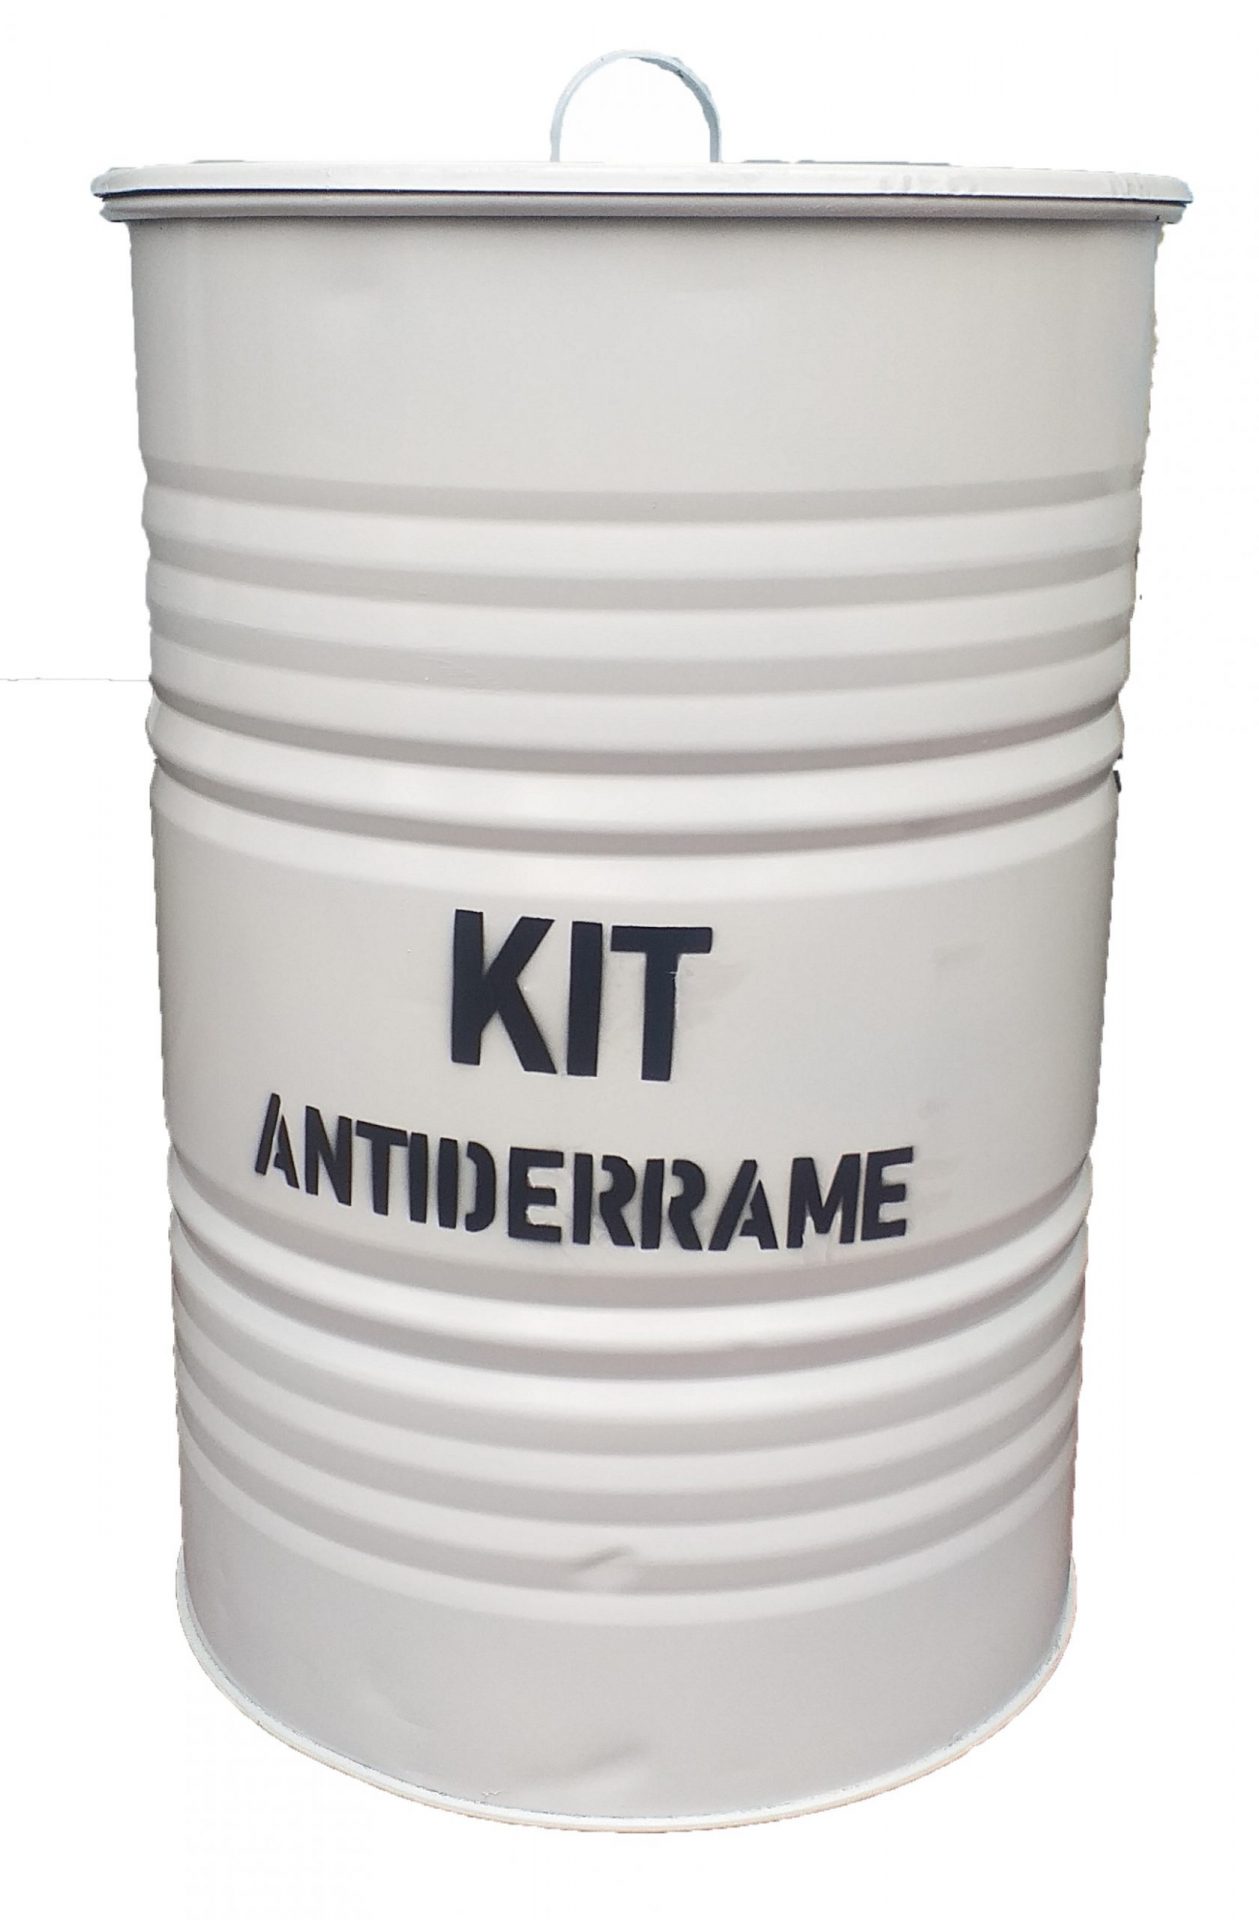 cilindro-kit-antiderrame